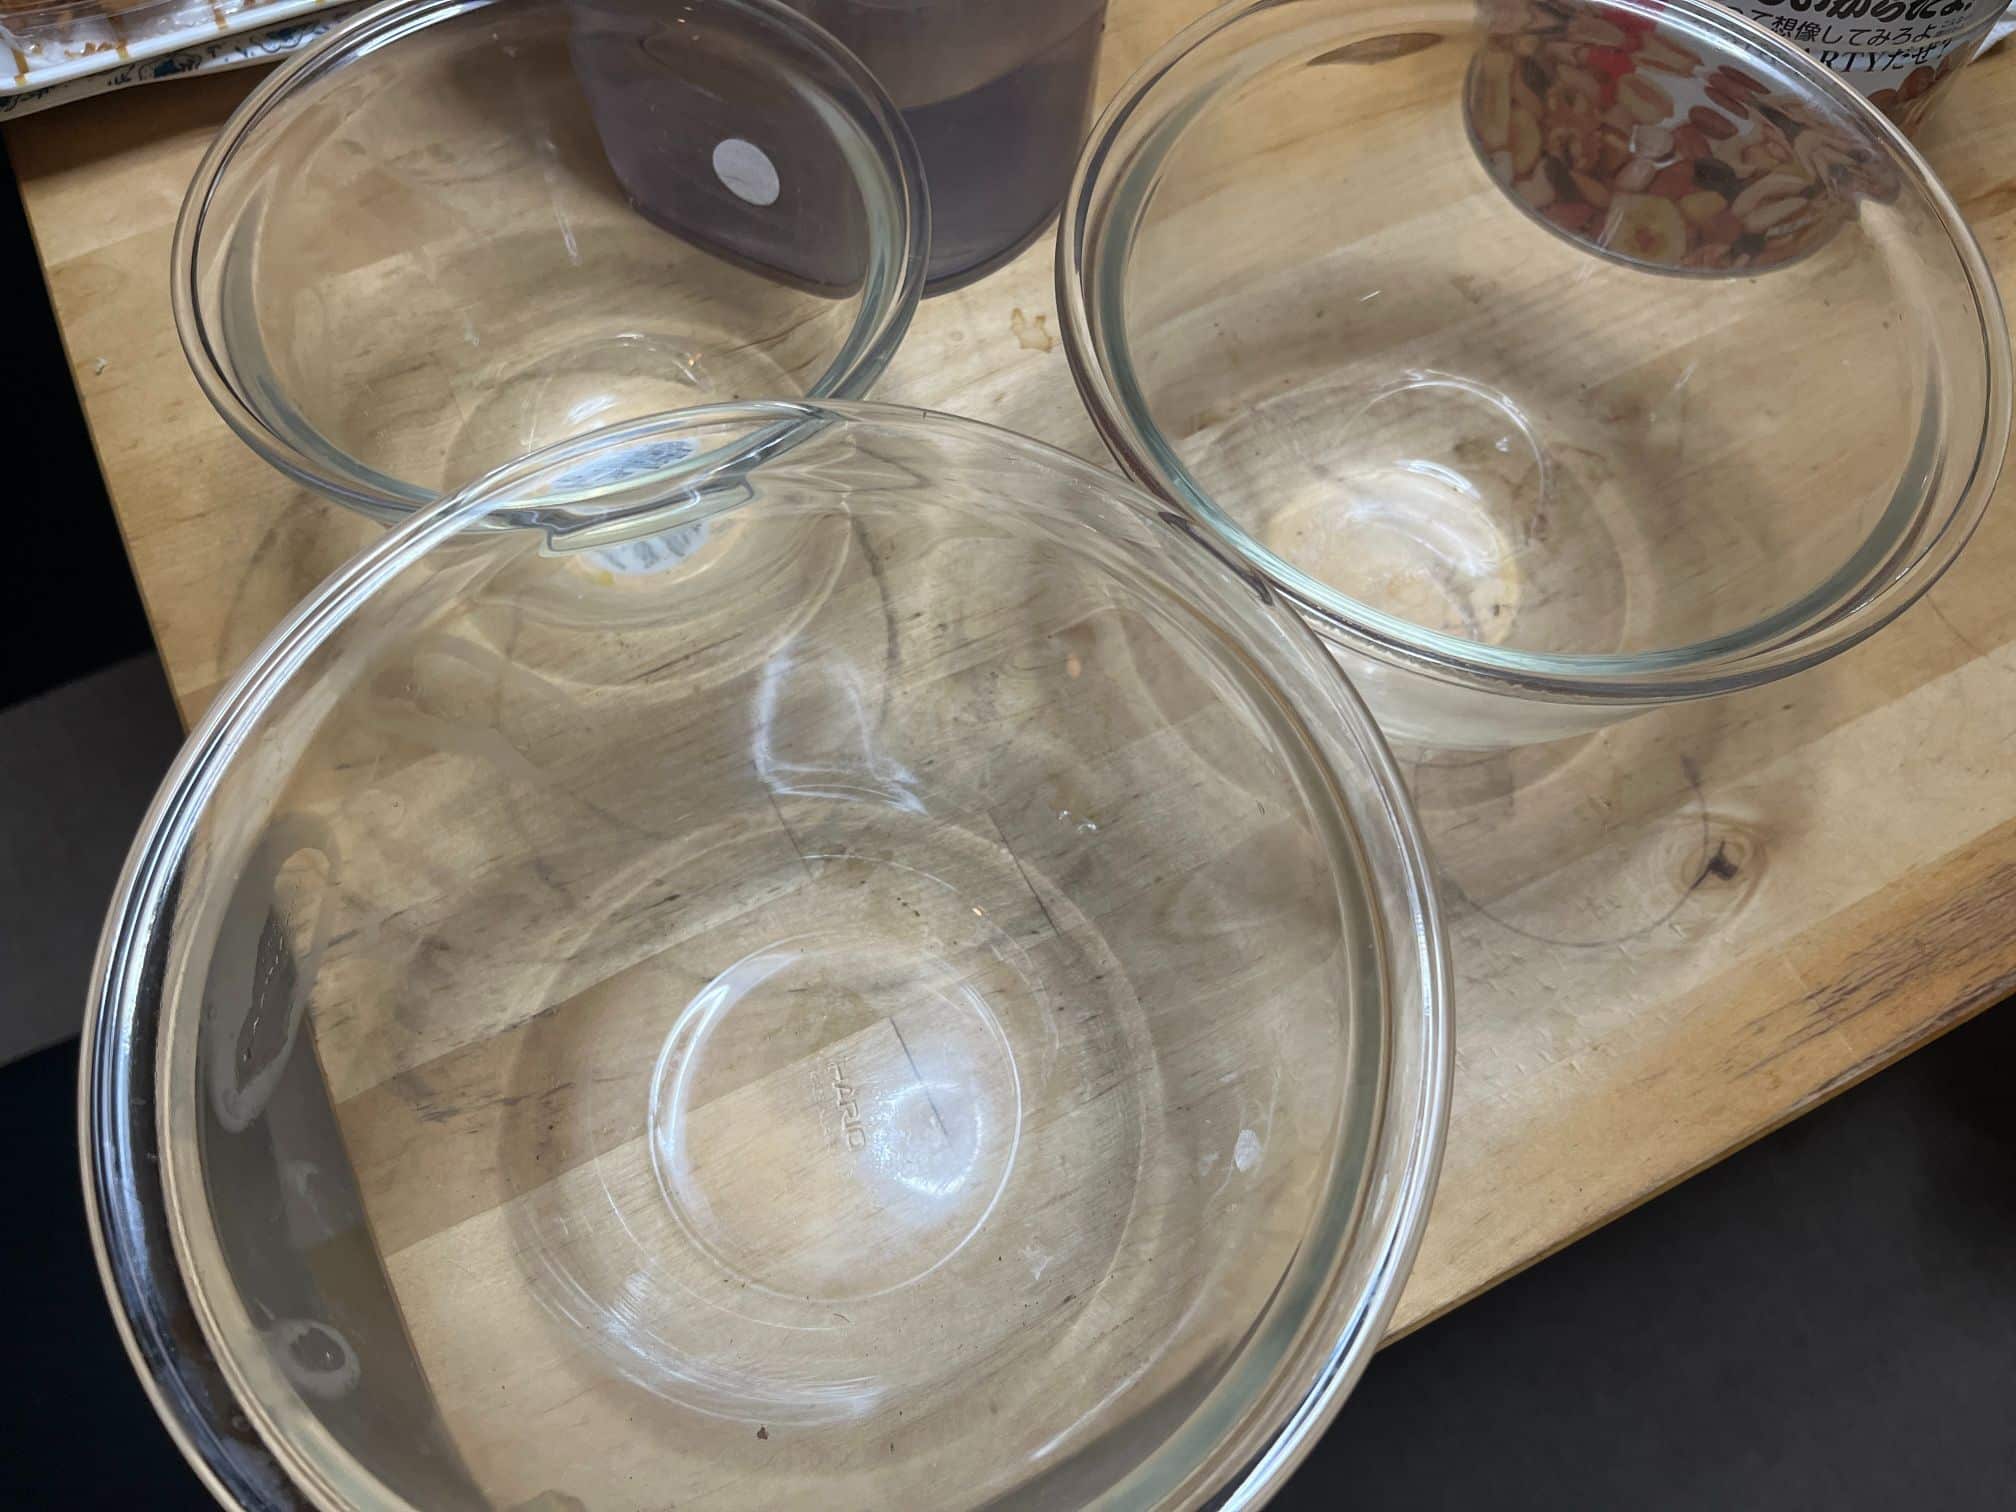 HARIO(ハリオ)の耐熱ガラス製ボウルで料理の幅が広がる!食器としても使える万能アイテム